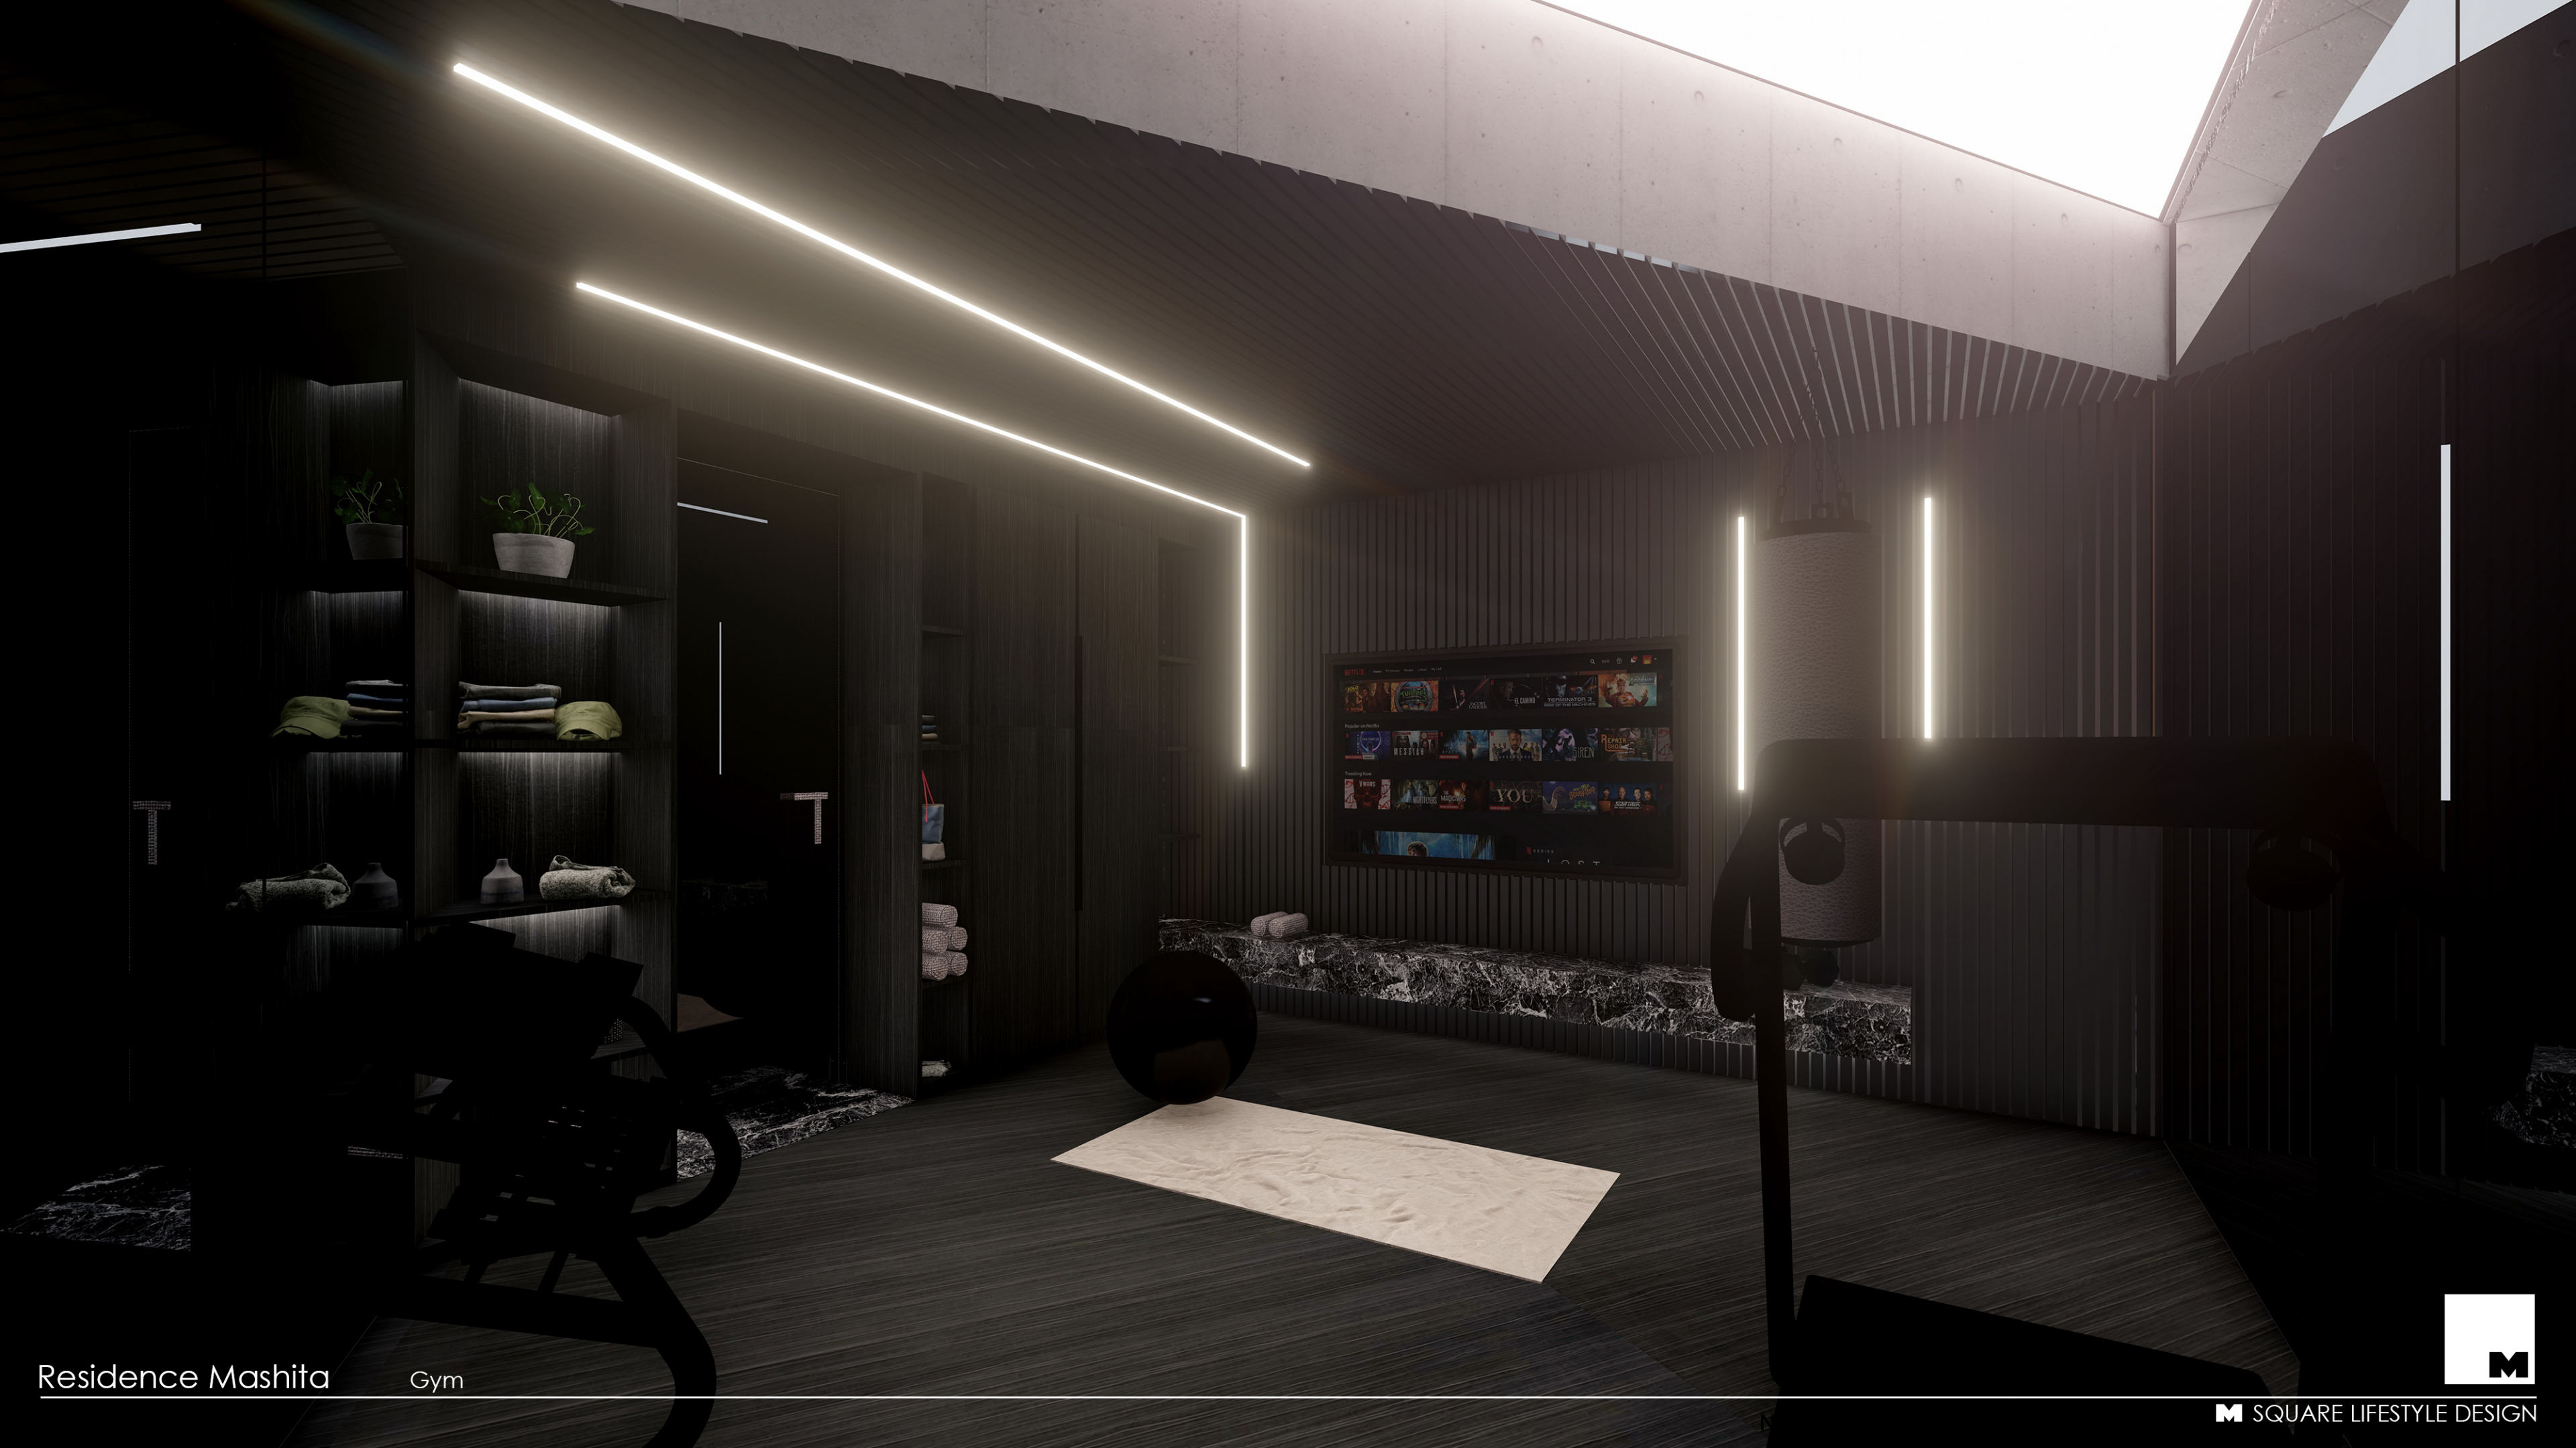 Neue Innenräume in AutoCAD lux render Bild